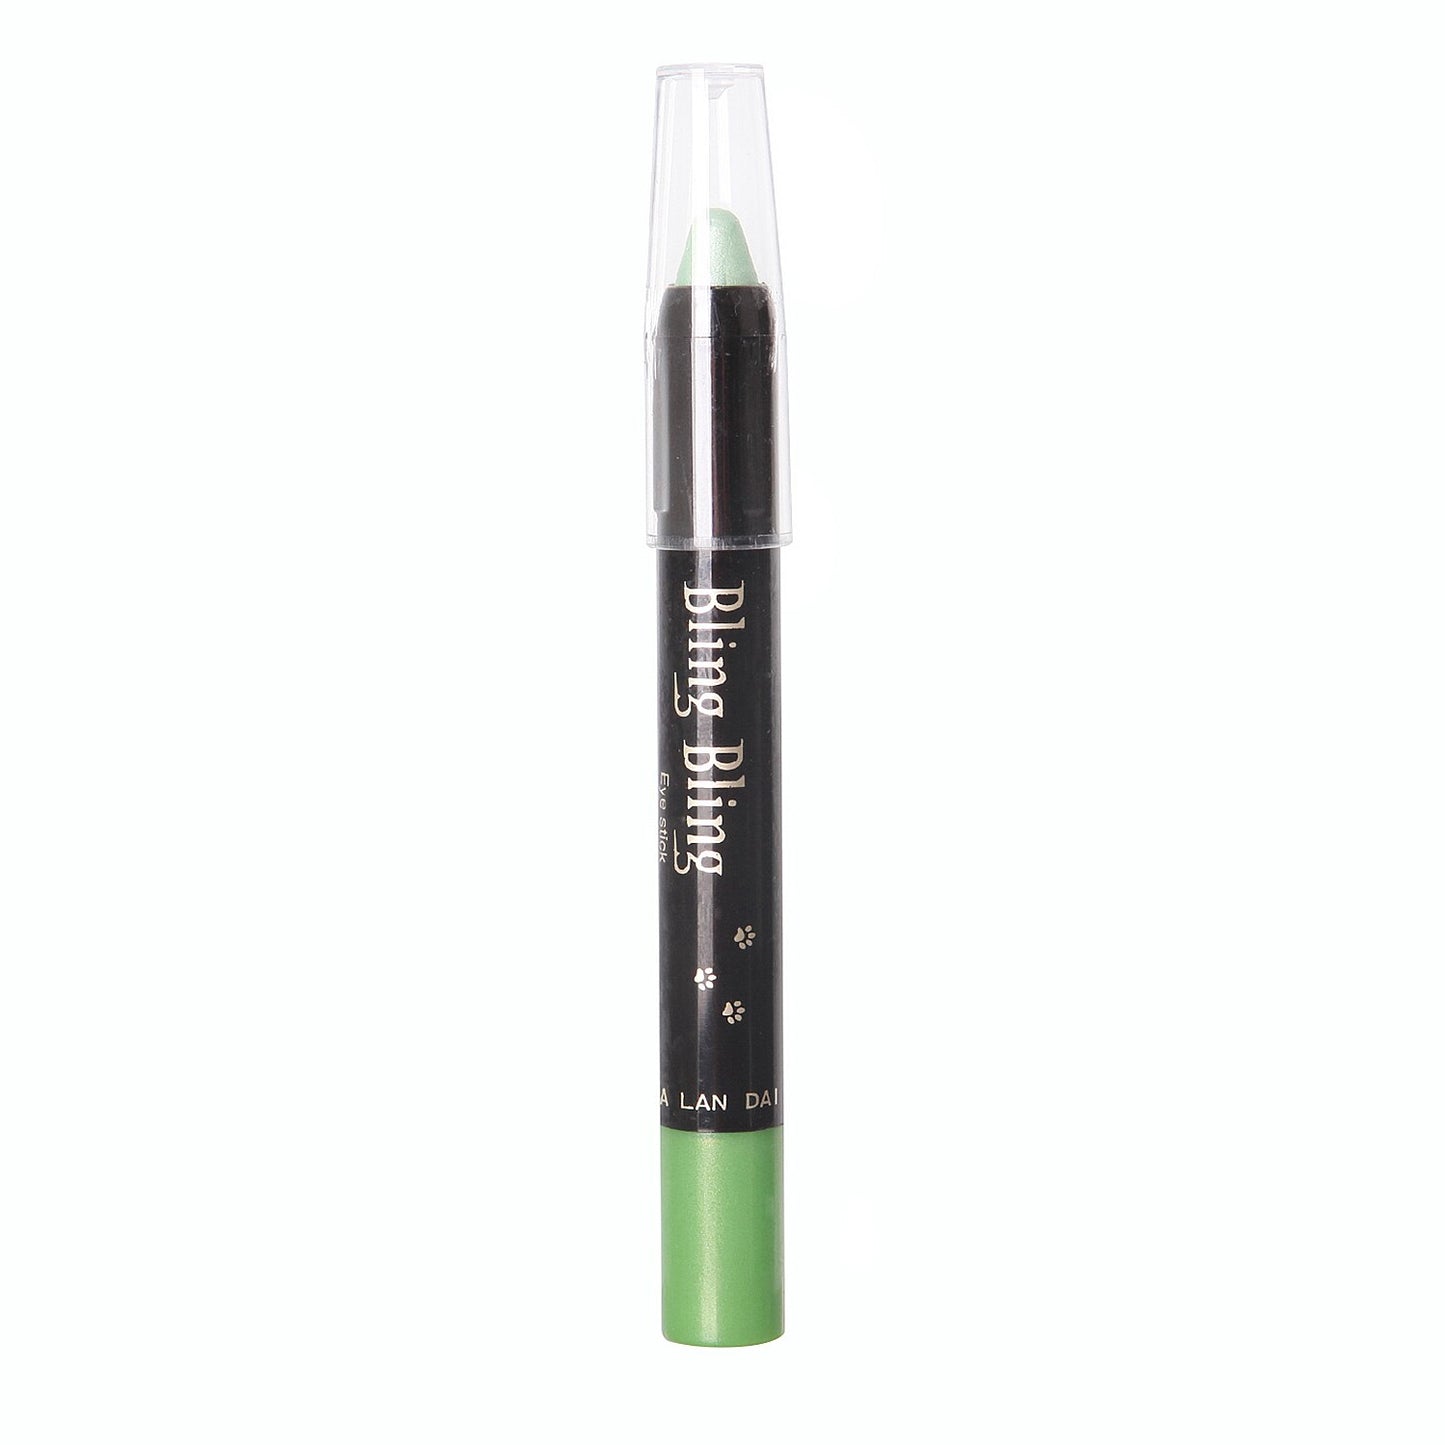 Pearlescent 2 in 1 Eyeshadow Eyeliner pen